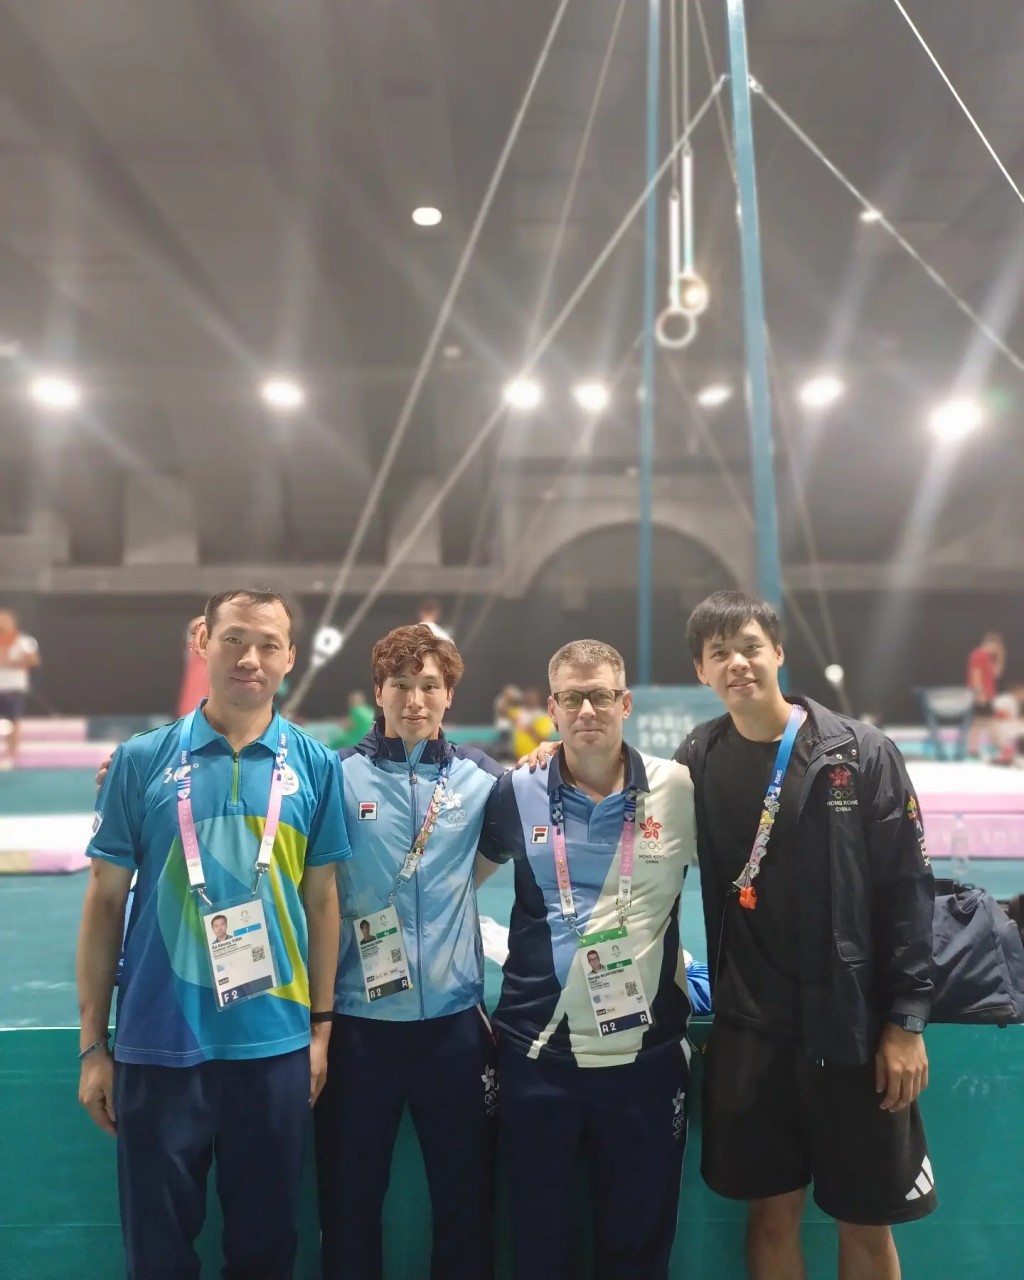 奧運體操裁判袁家強(左起)、石偉雄及塞治教練一起出戰奧運。 網上圖片